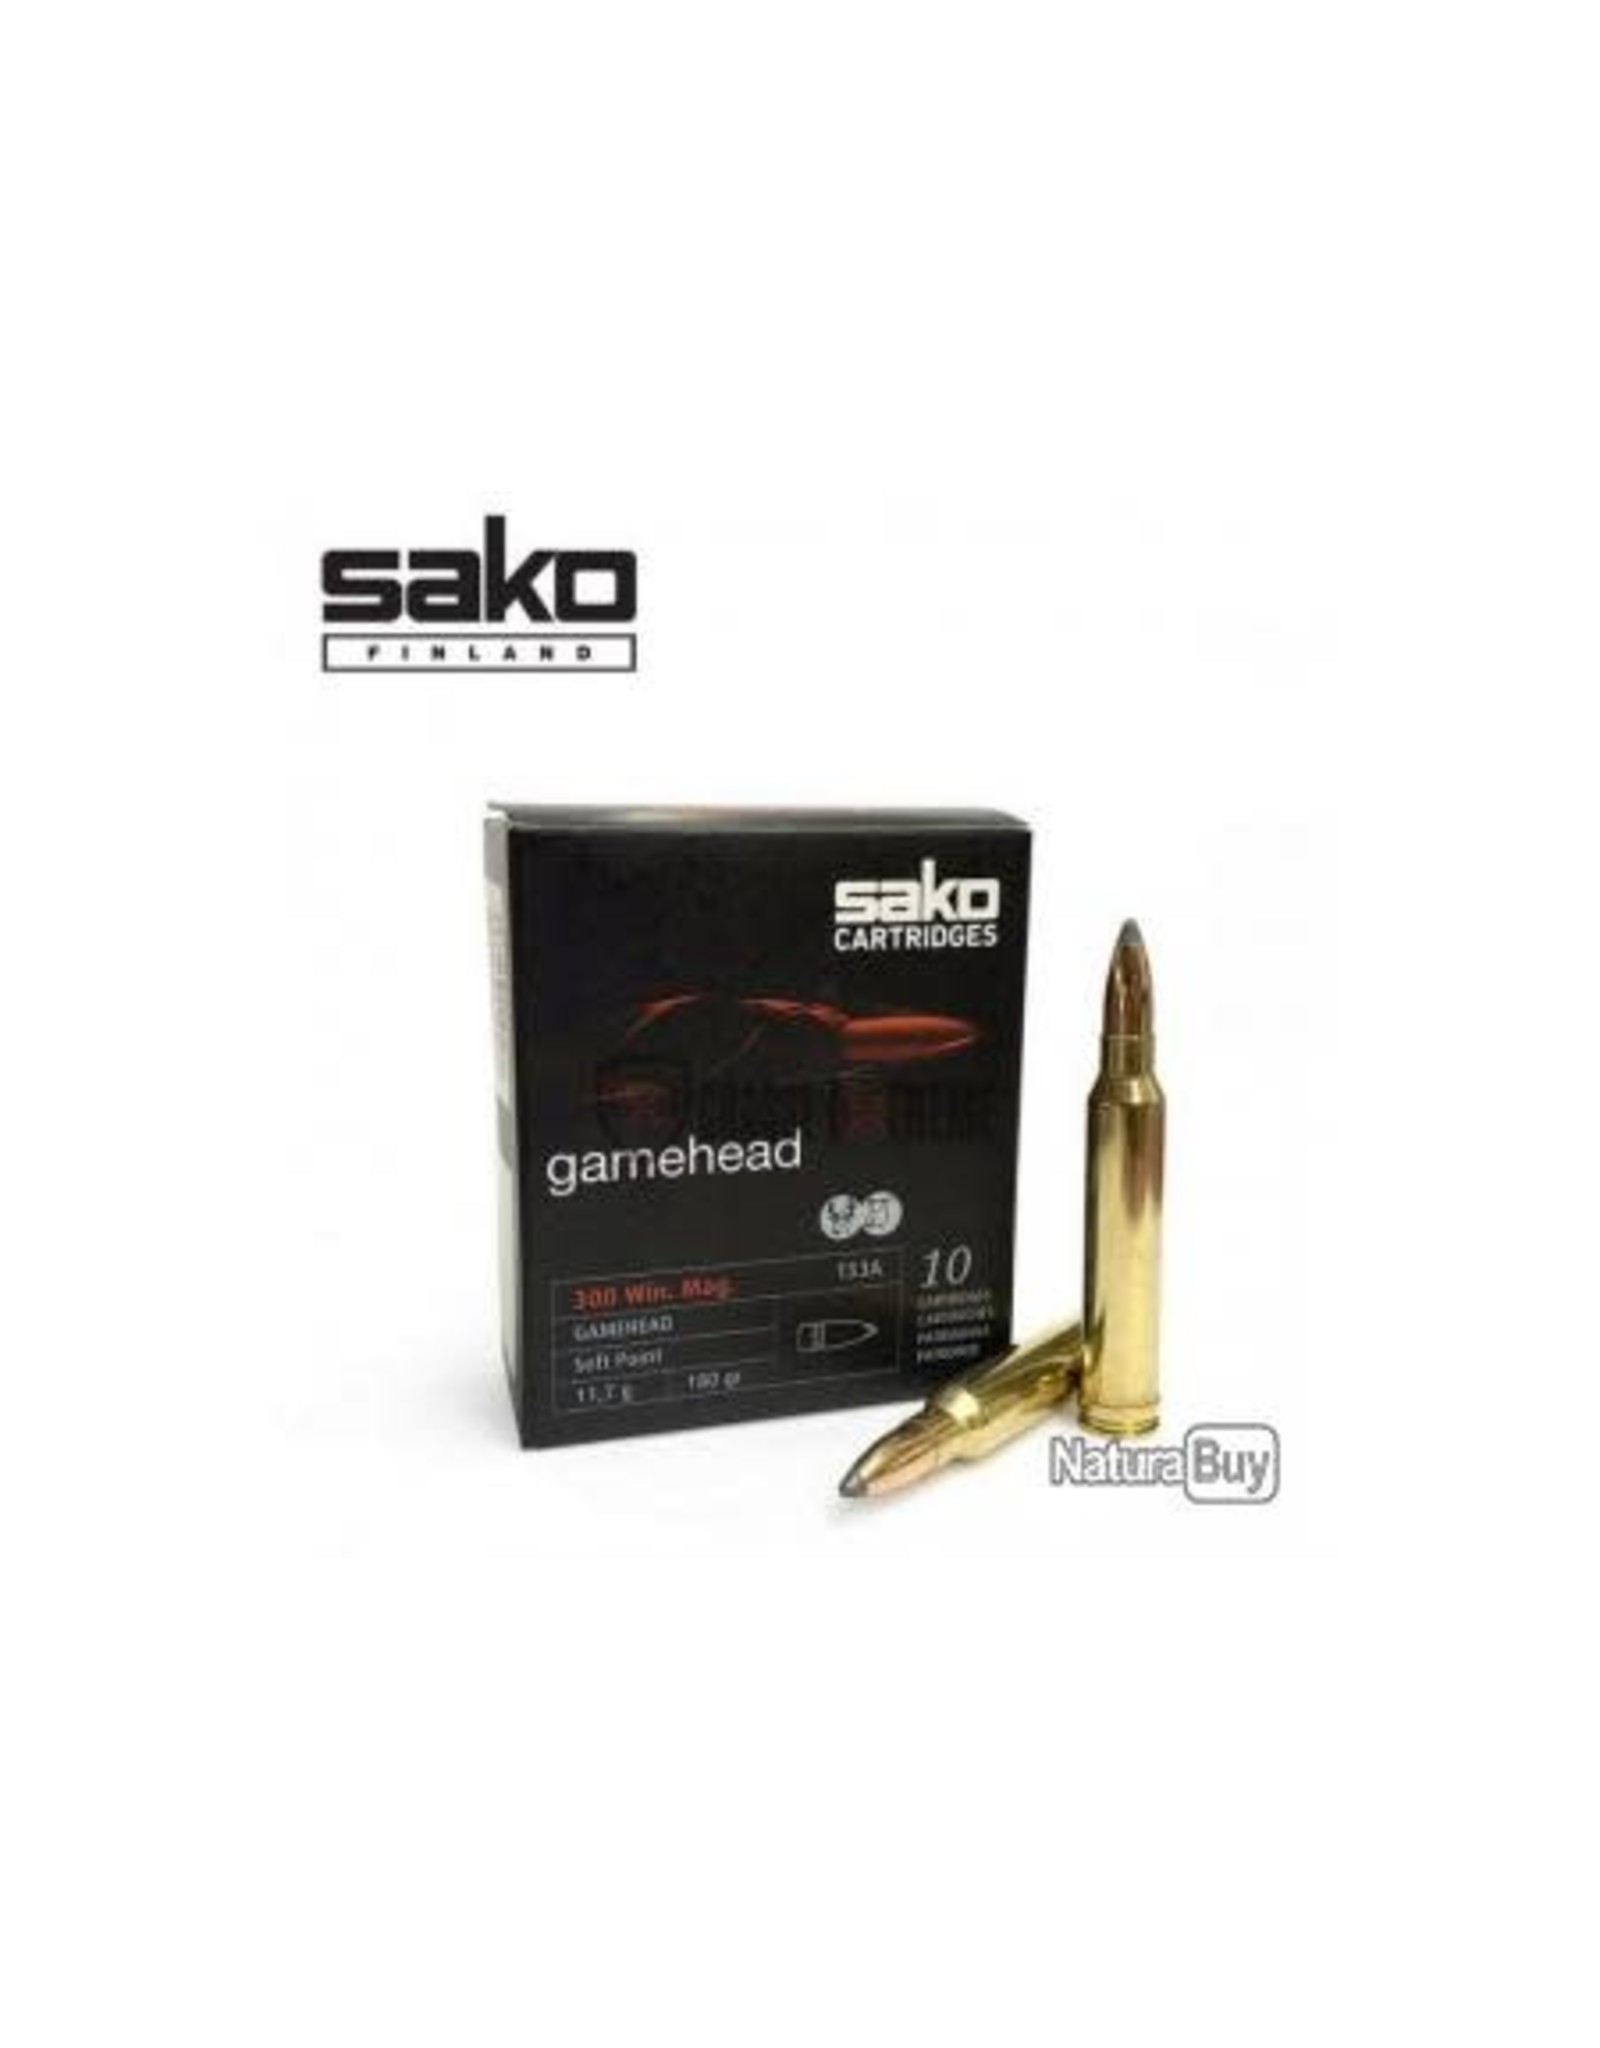 Sako Sako Gamehead 300 Win Mag SP 180gr